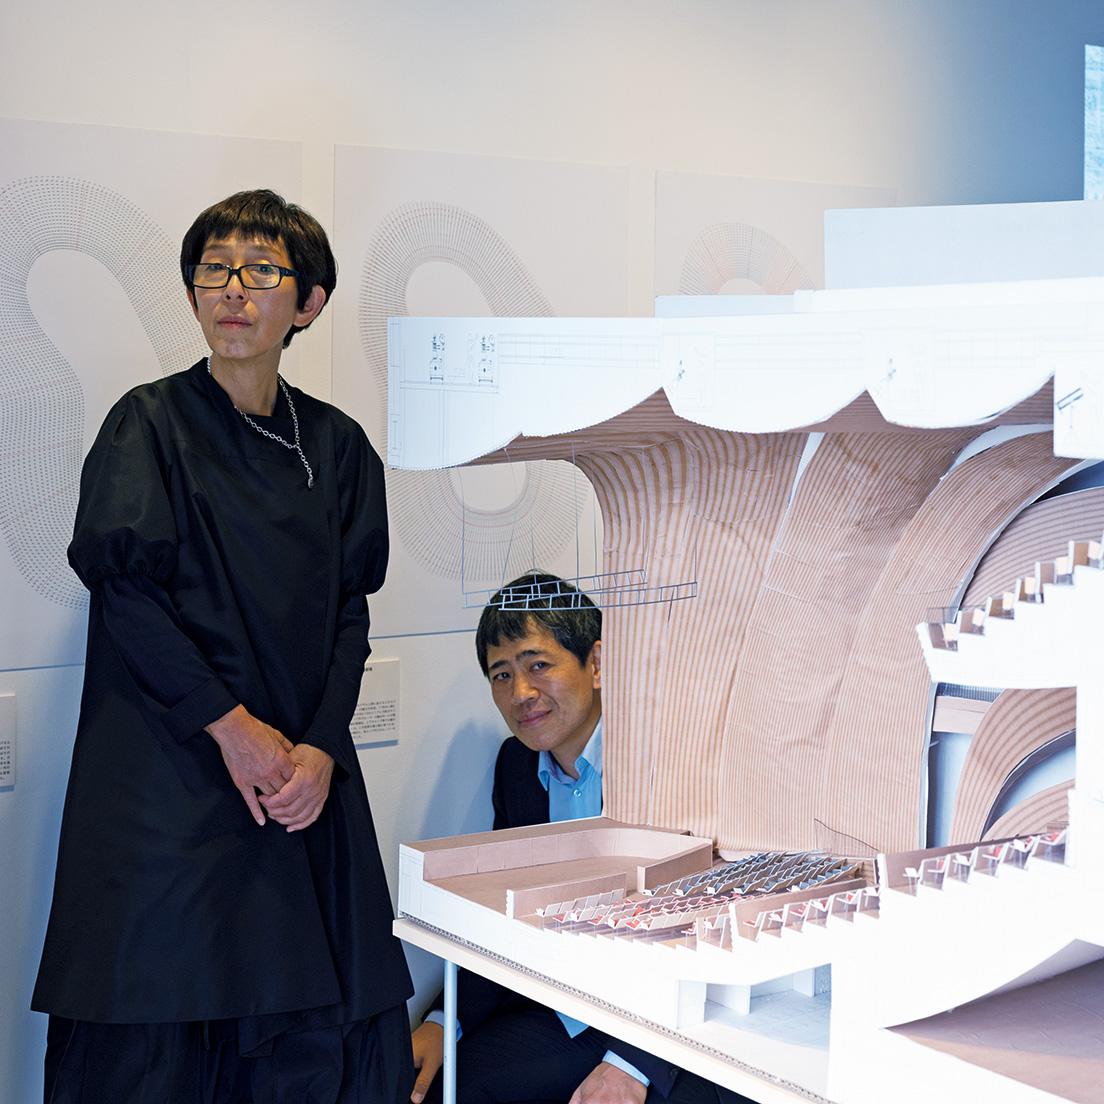 〈蘇州獅子山広場芸術劇場〉の模型のそばで。展示されている模型は、基本的に実際に事務所でも使っているもの。二人の設計のプロセスをリアルに体感できる展示だ。撮影・ホンマタカシ。photo_Takashi Homma